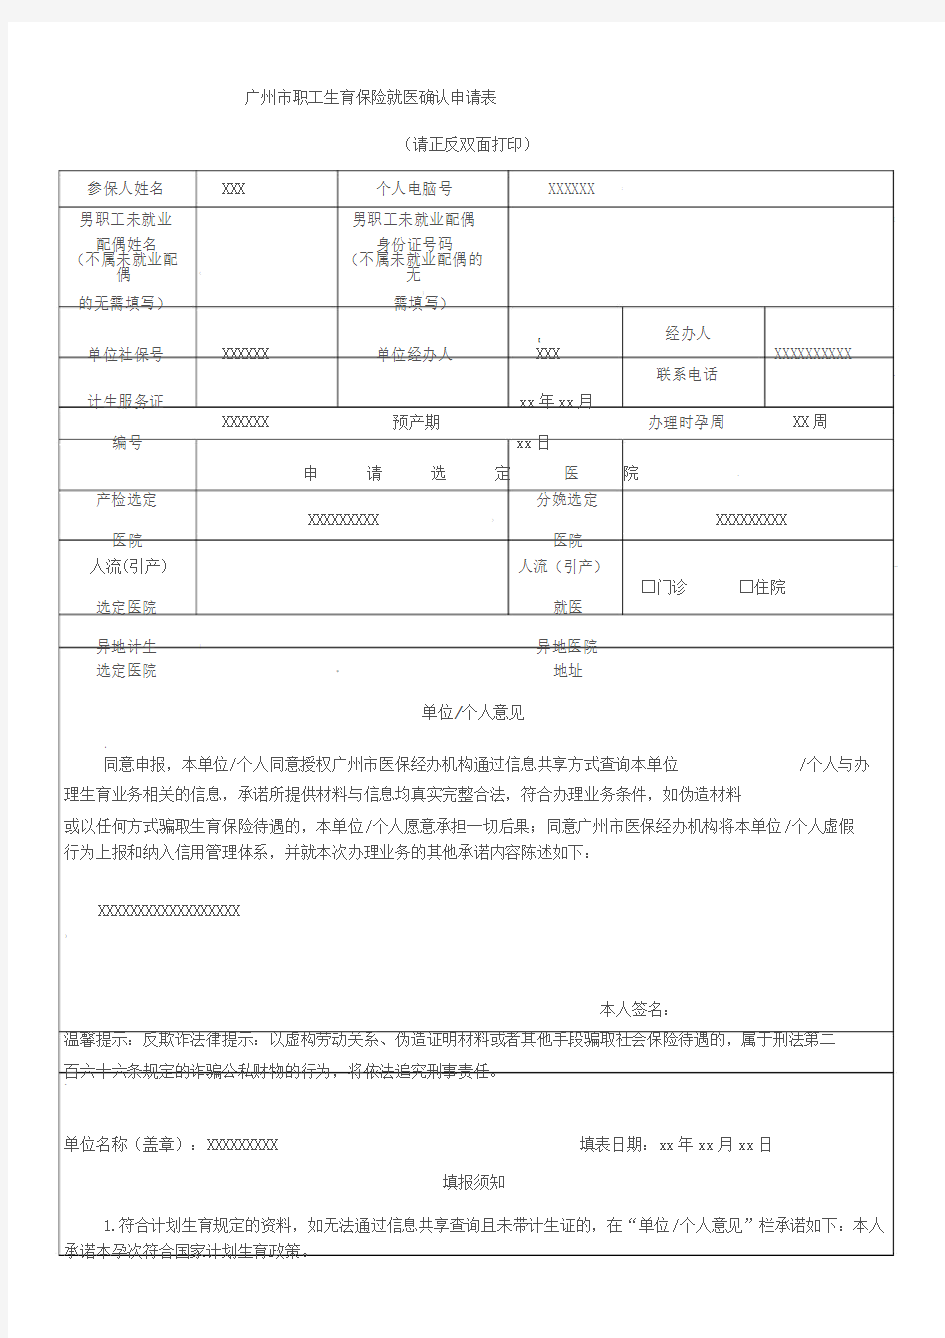 广州市职工生育保险就医确认申请表(2019年版)